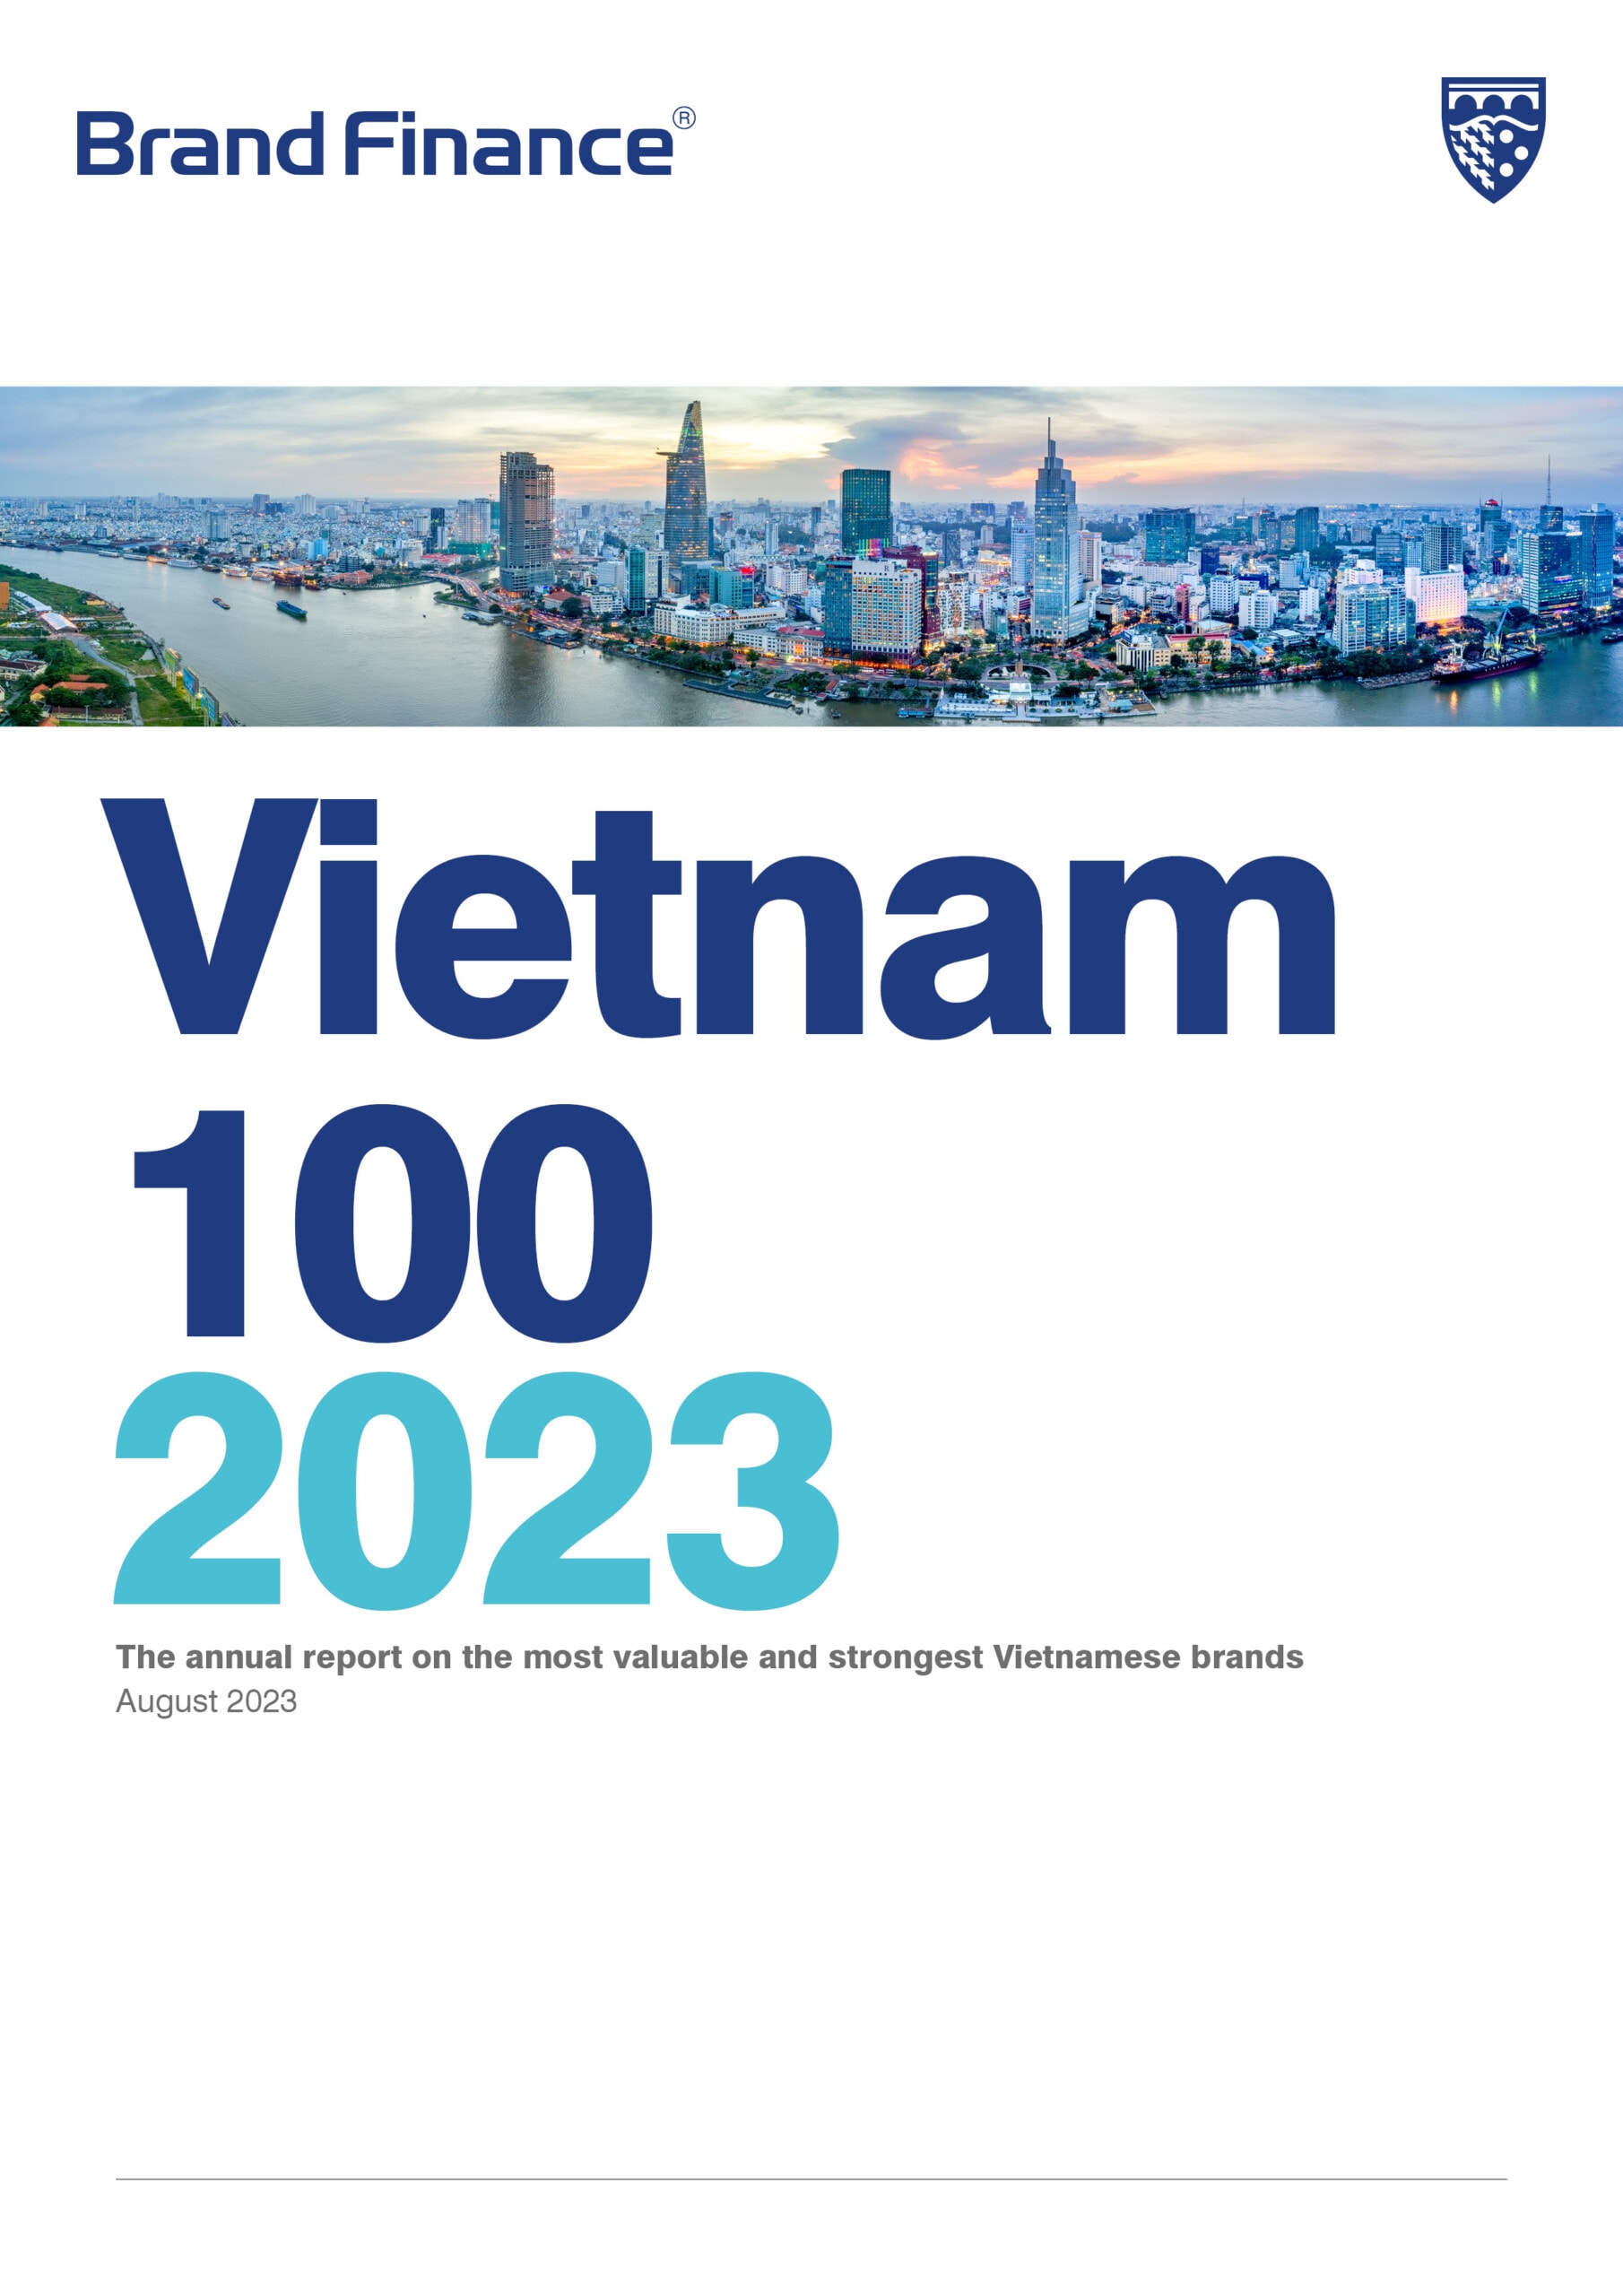 Brand Finance Vietnam 100 2023 